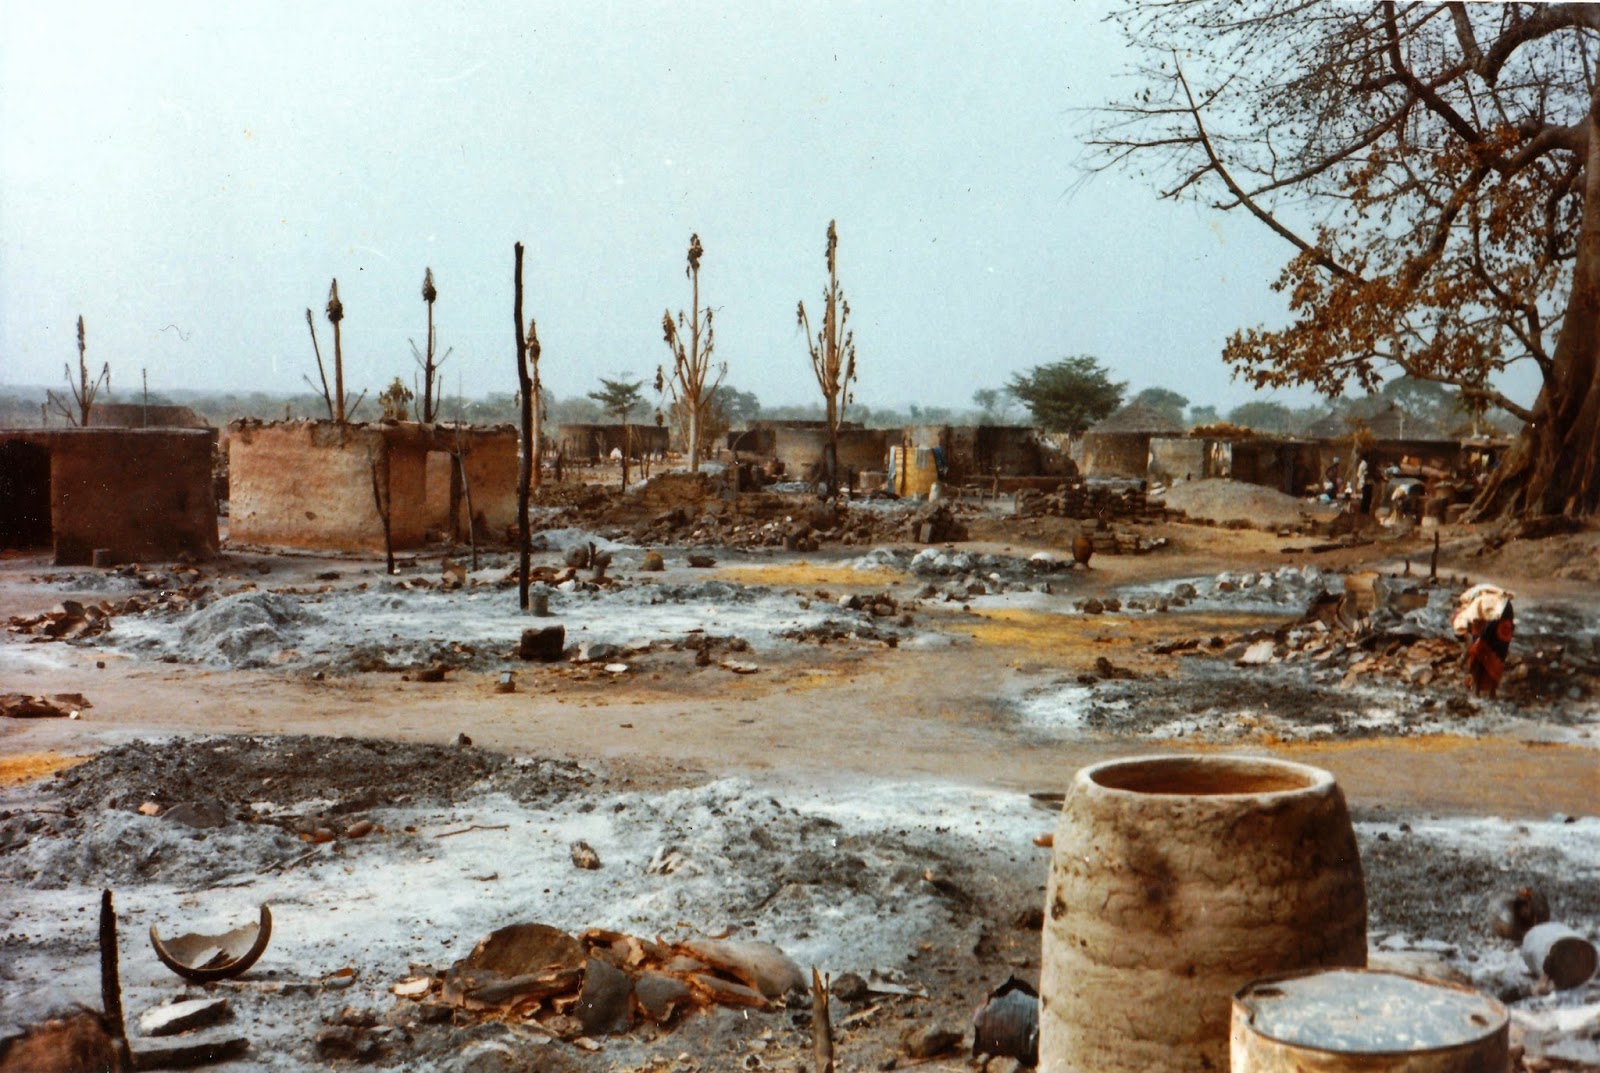 Luís Graça & Camaradas da Guiné: Guiné 61/74 - P24743: Ataques ou  flagelações com foguetões 122 mm: testemunhos (2): Nova Lamego, 5 de abril  de 1970: seis jactos do povo, sem consequências